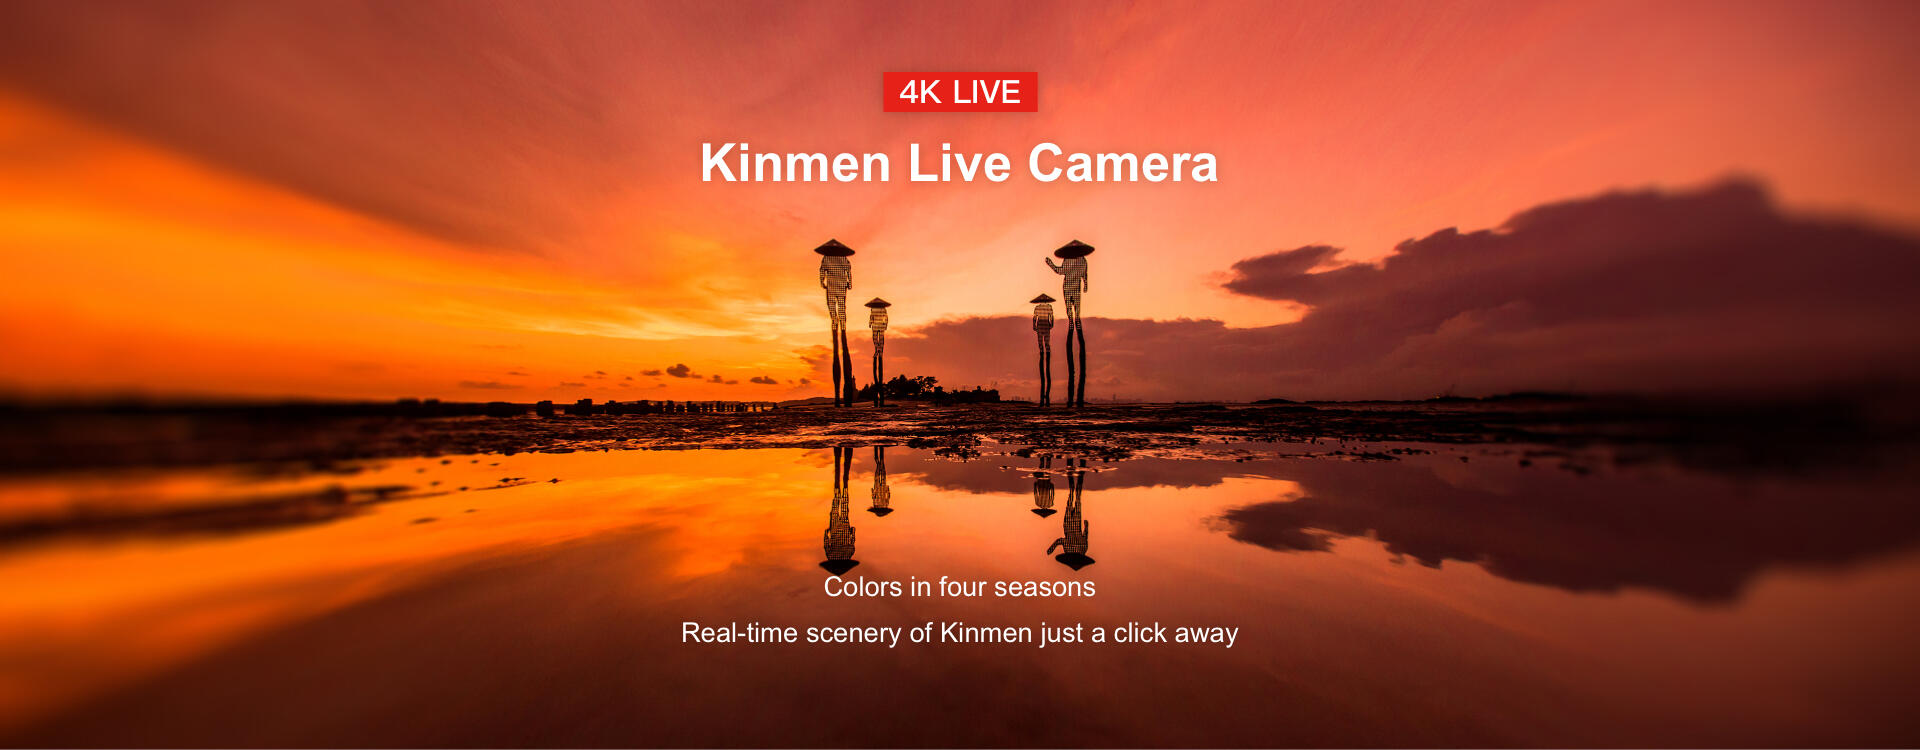 Kinmen Live Camera